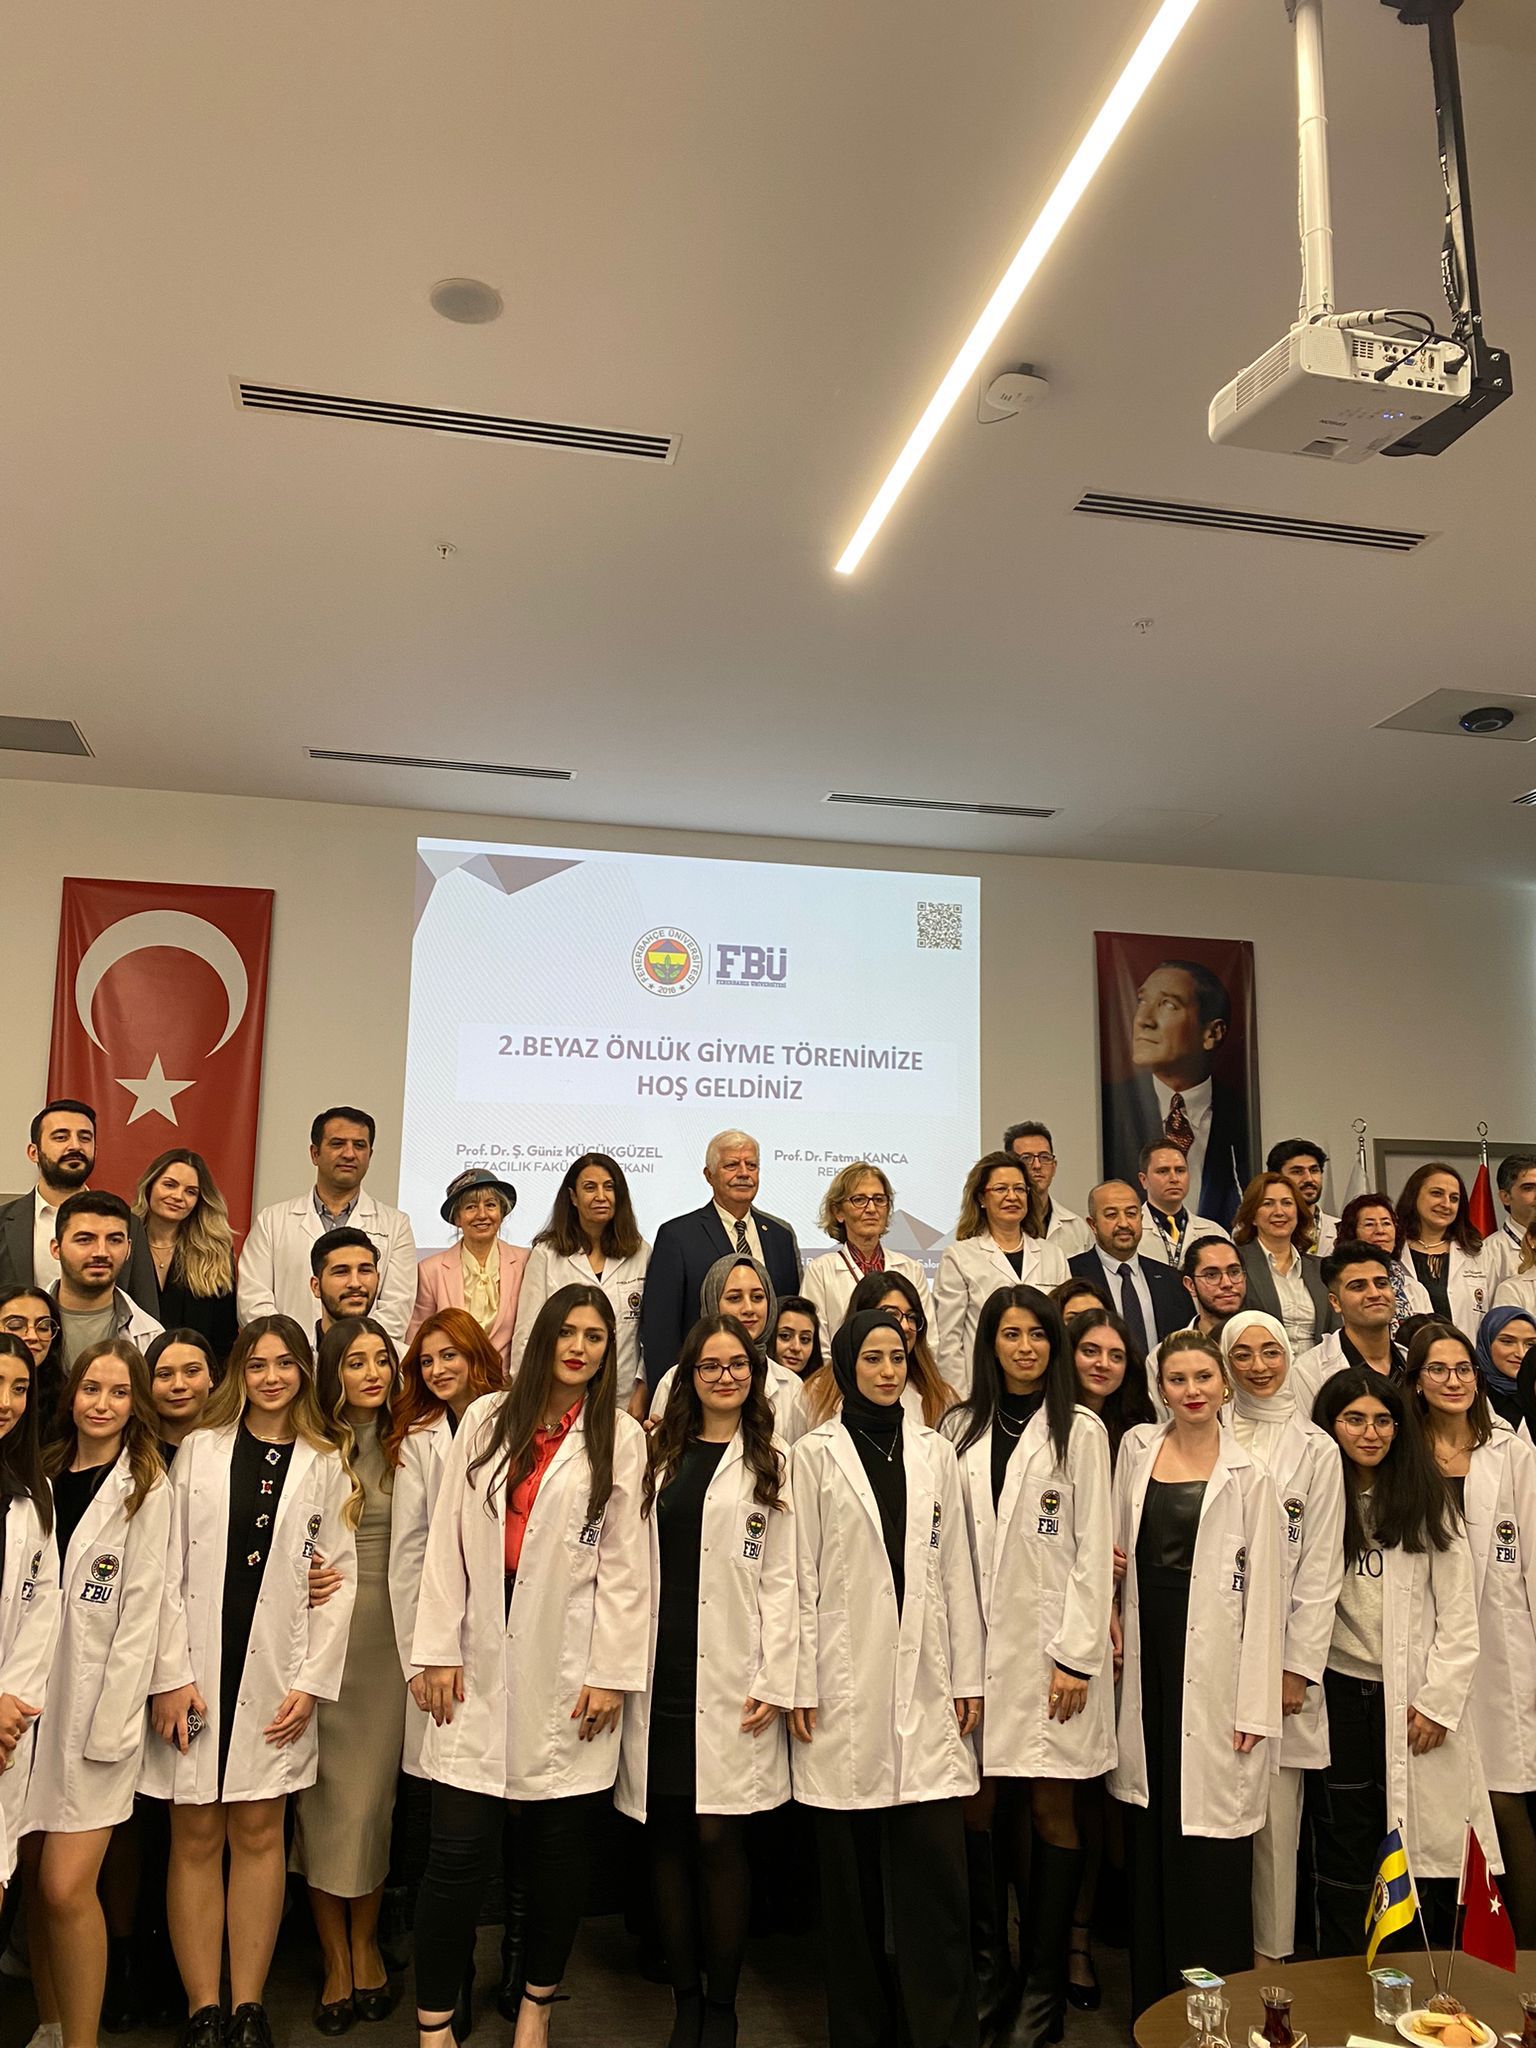  Fenerbahçe Üniversitesi Eczacılık Fakültesi 2. Beyaz Önlük Giyme Töreni 